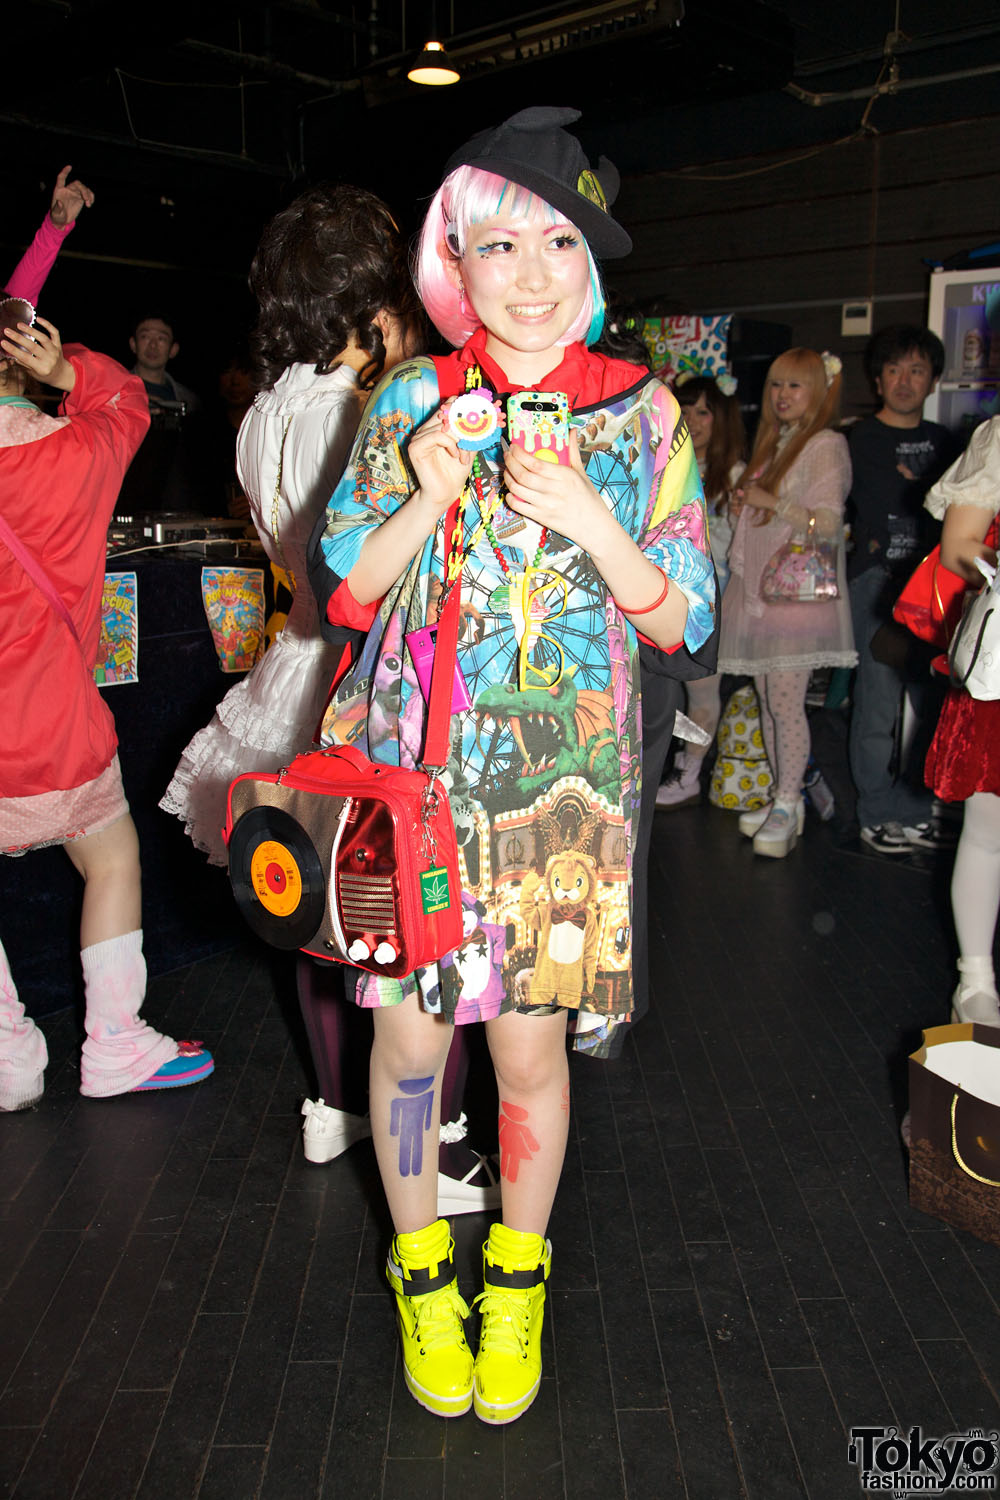 Harajuku Fashion Party Snaps at Pop N Cute, with Neeko, Kurebayashi ...